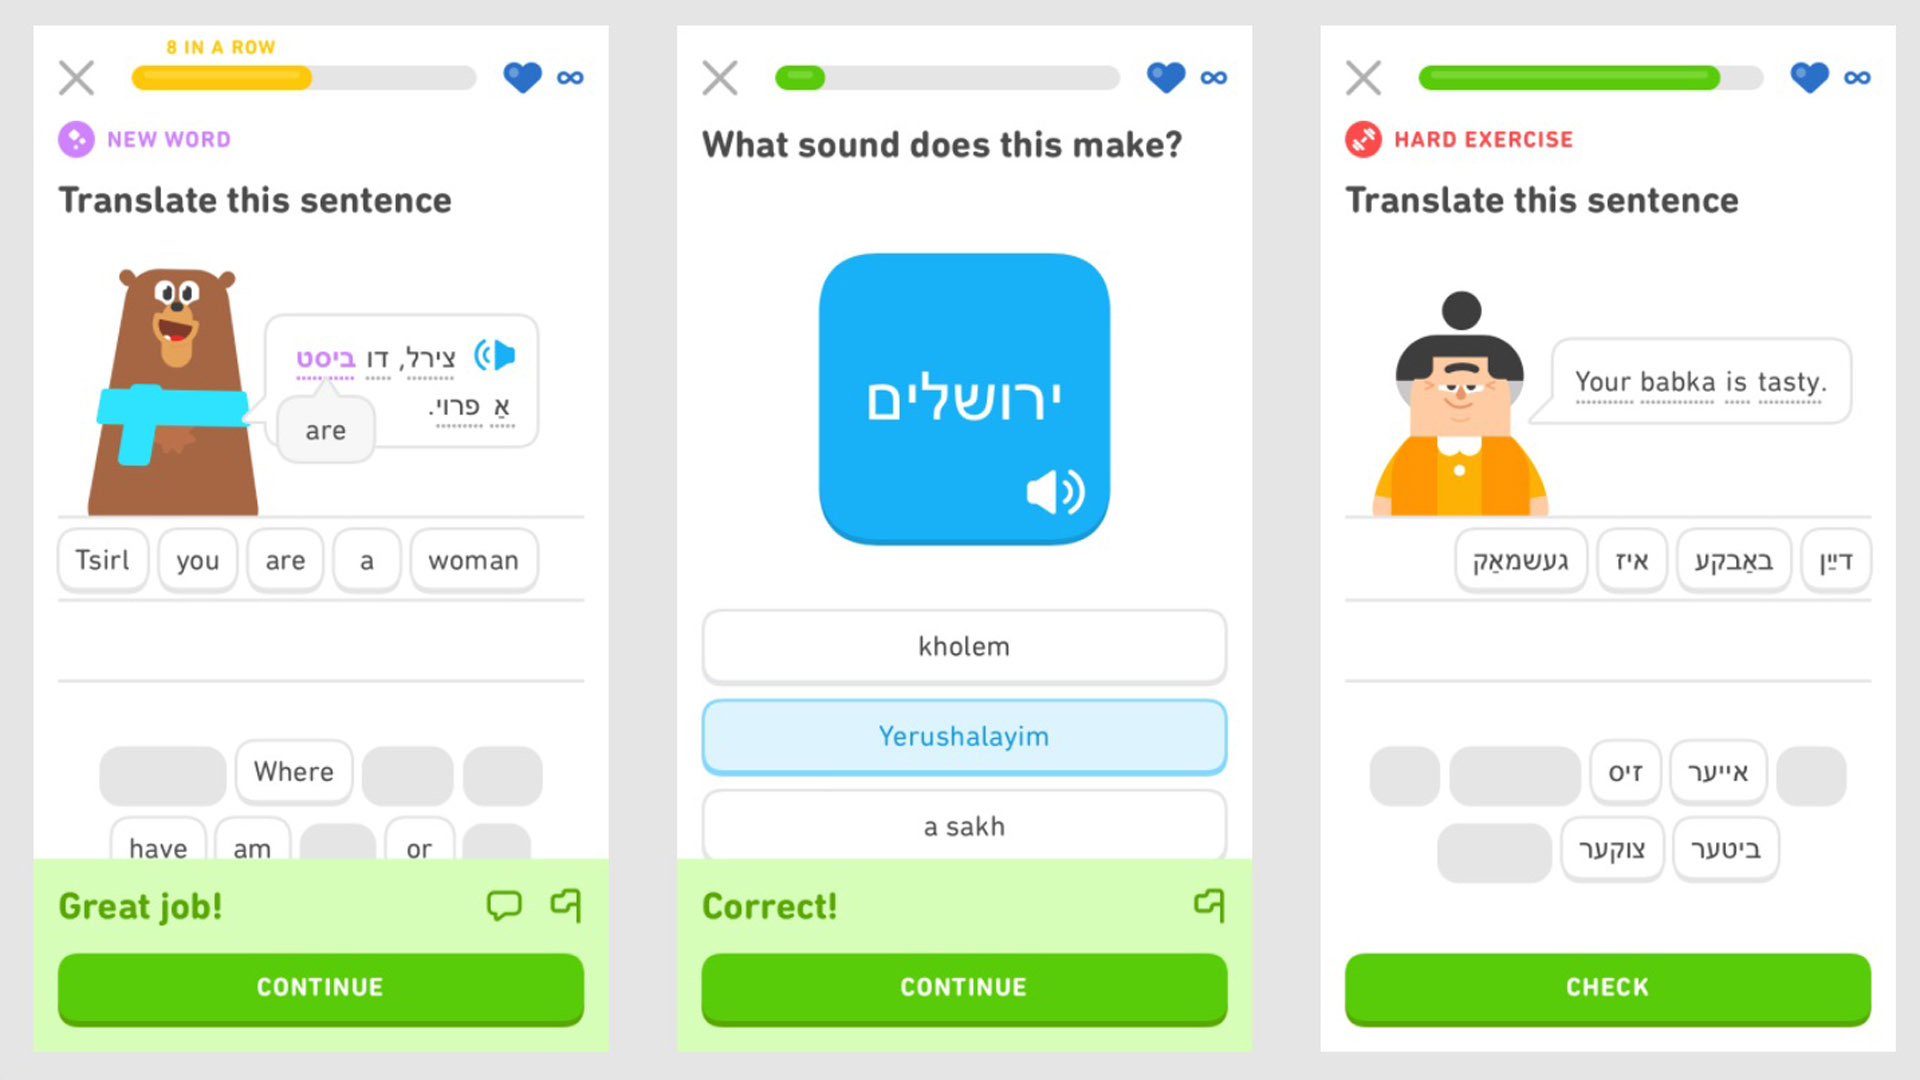 Exemples de cours de yiddish sur Duolingo